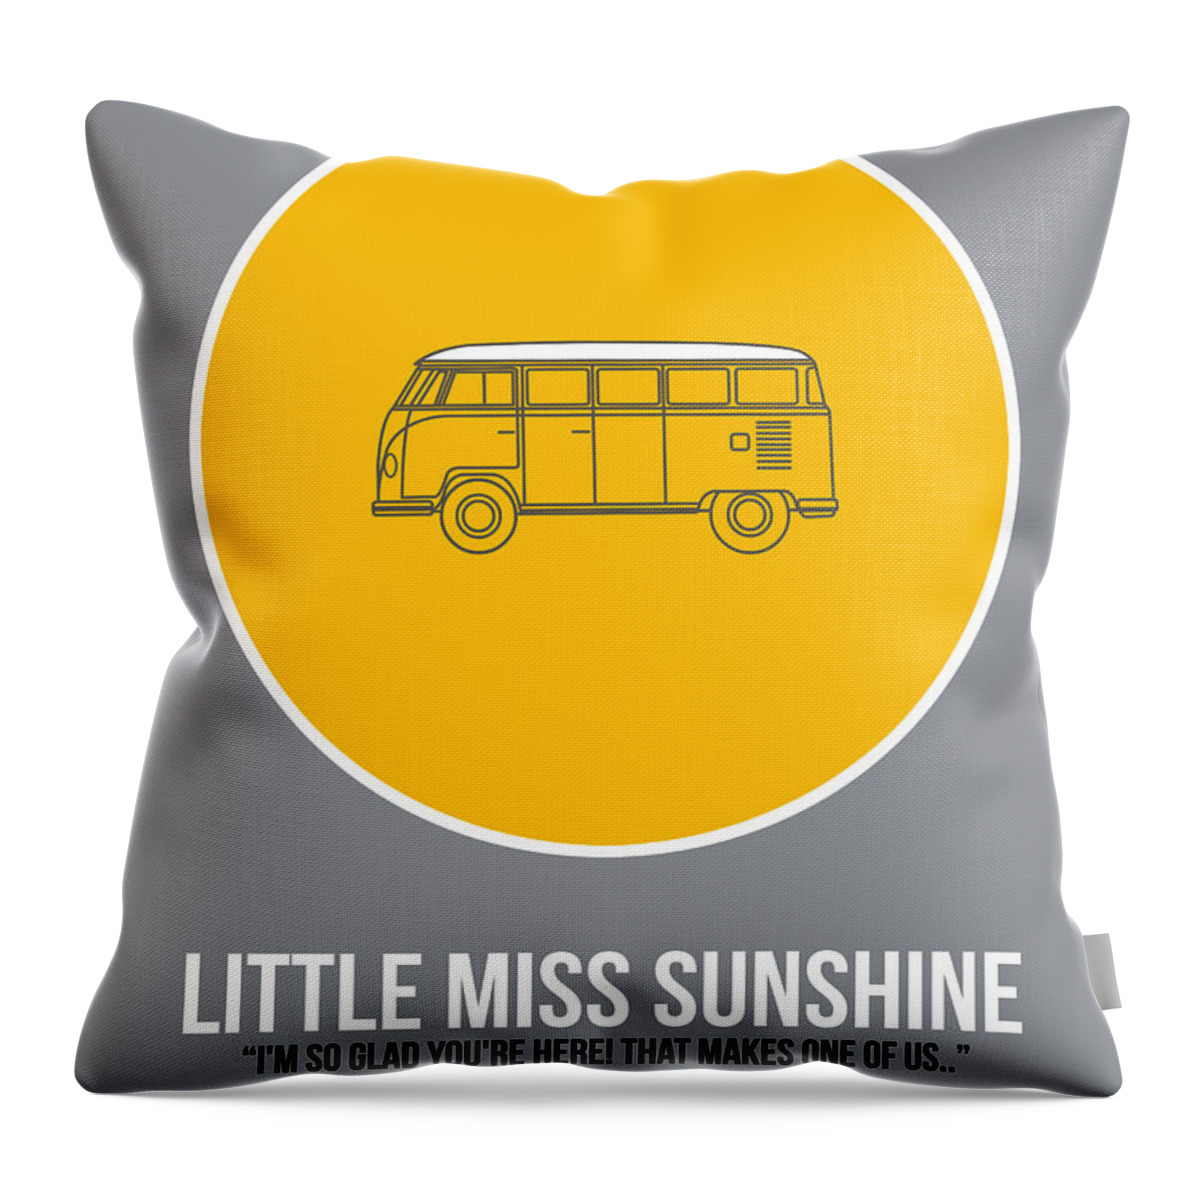 Little Miss Sunshine Throw Pillow featuring the digital art Little Miss Sunshine by Naxart Studio